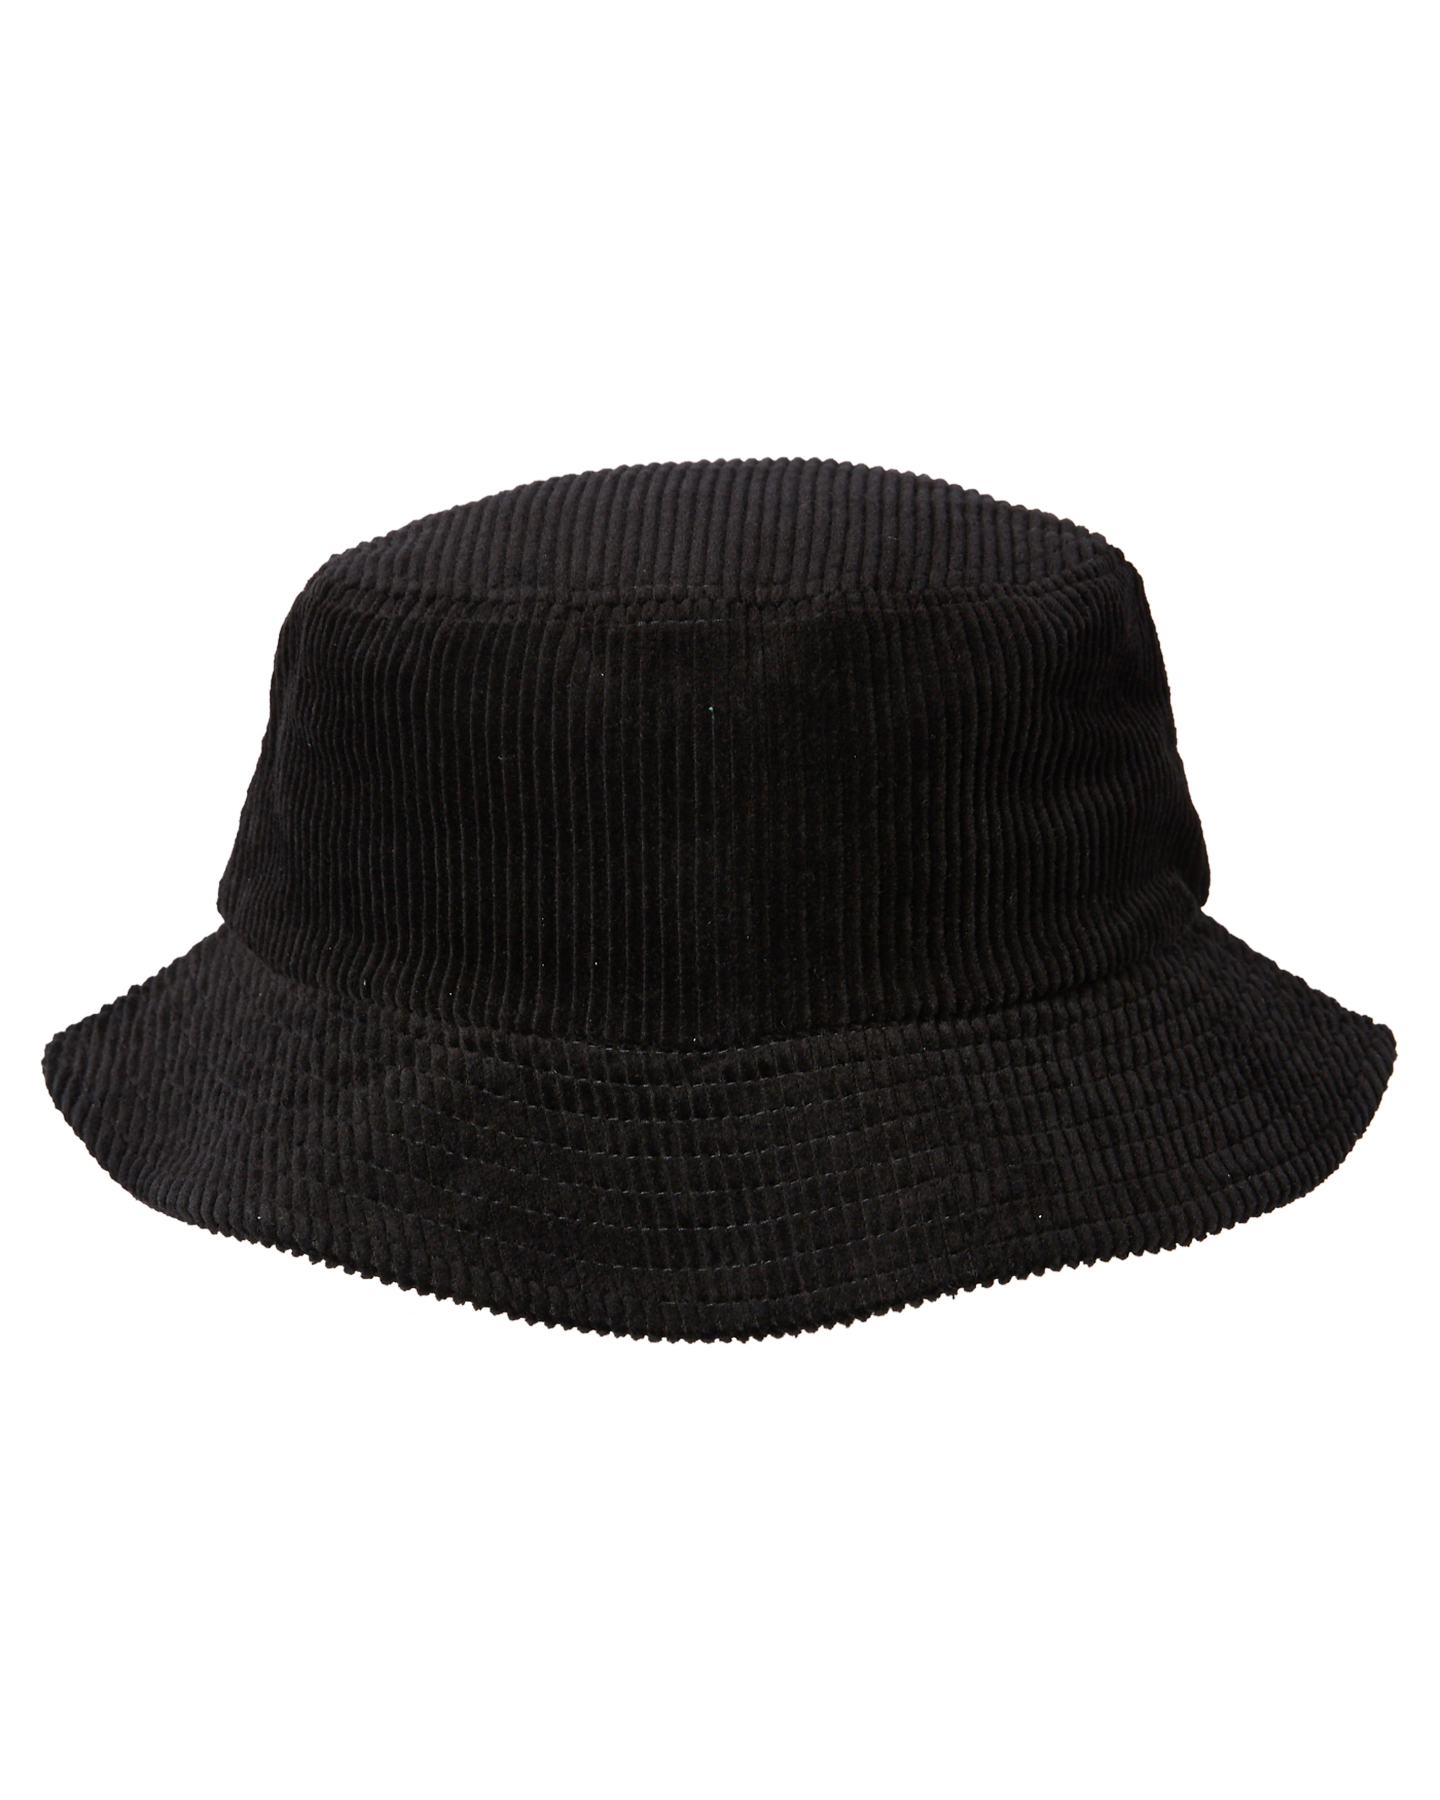 Billy Bones Club Stay Bad Corduroy Bucket Hat - Black | SurfStitch